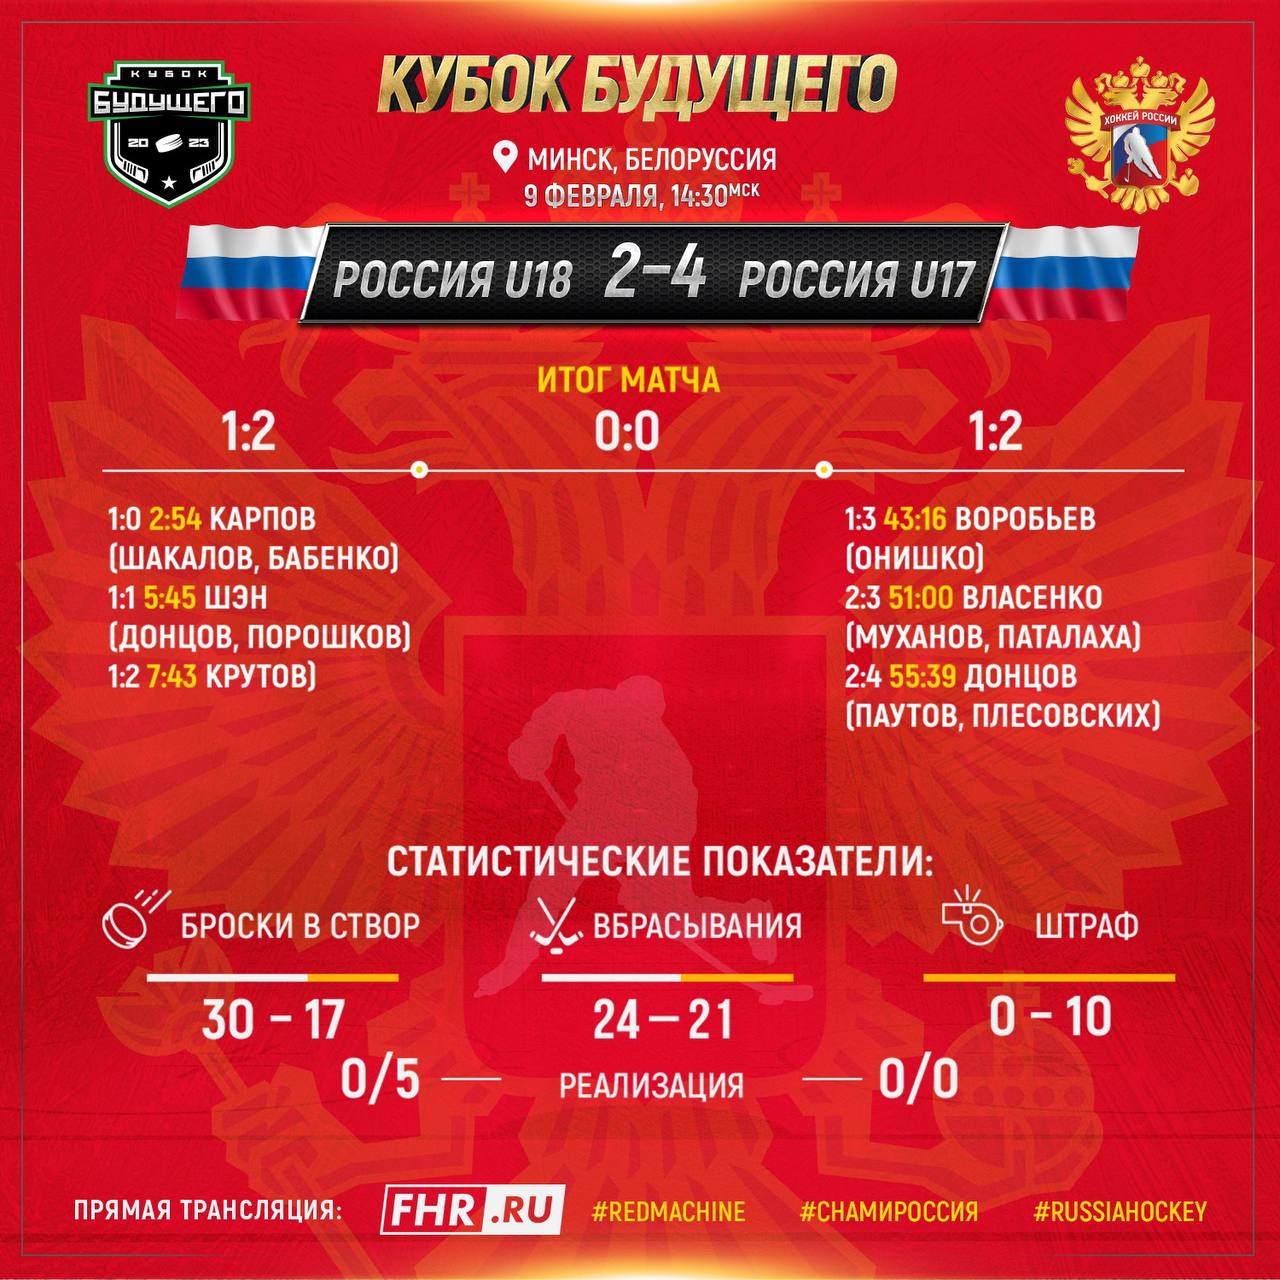 Макар Фомин делится эмоциями от матча и победы в составе Сборной России U17.